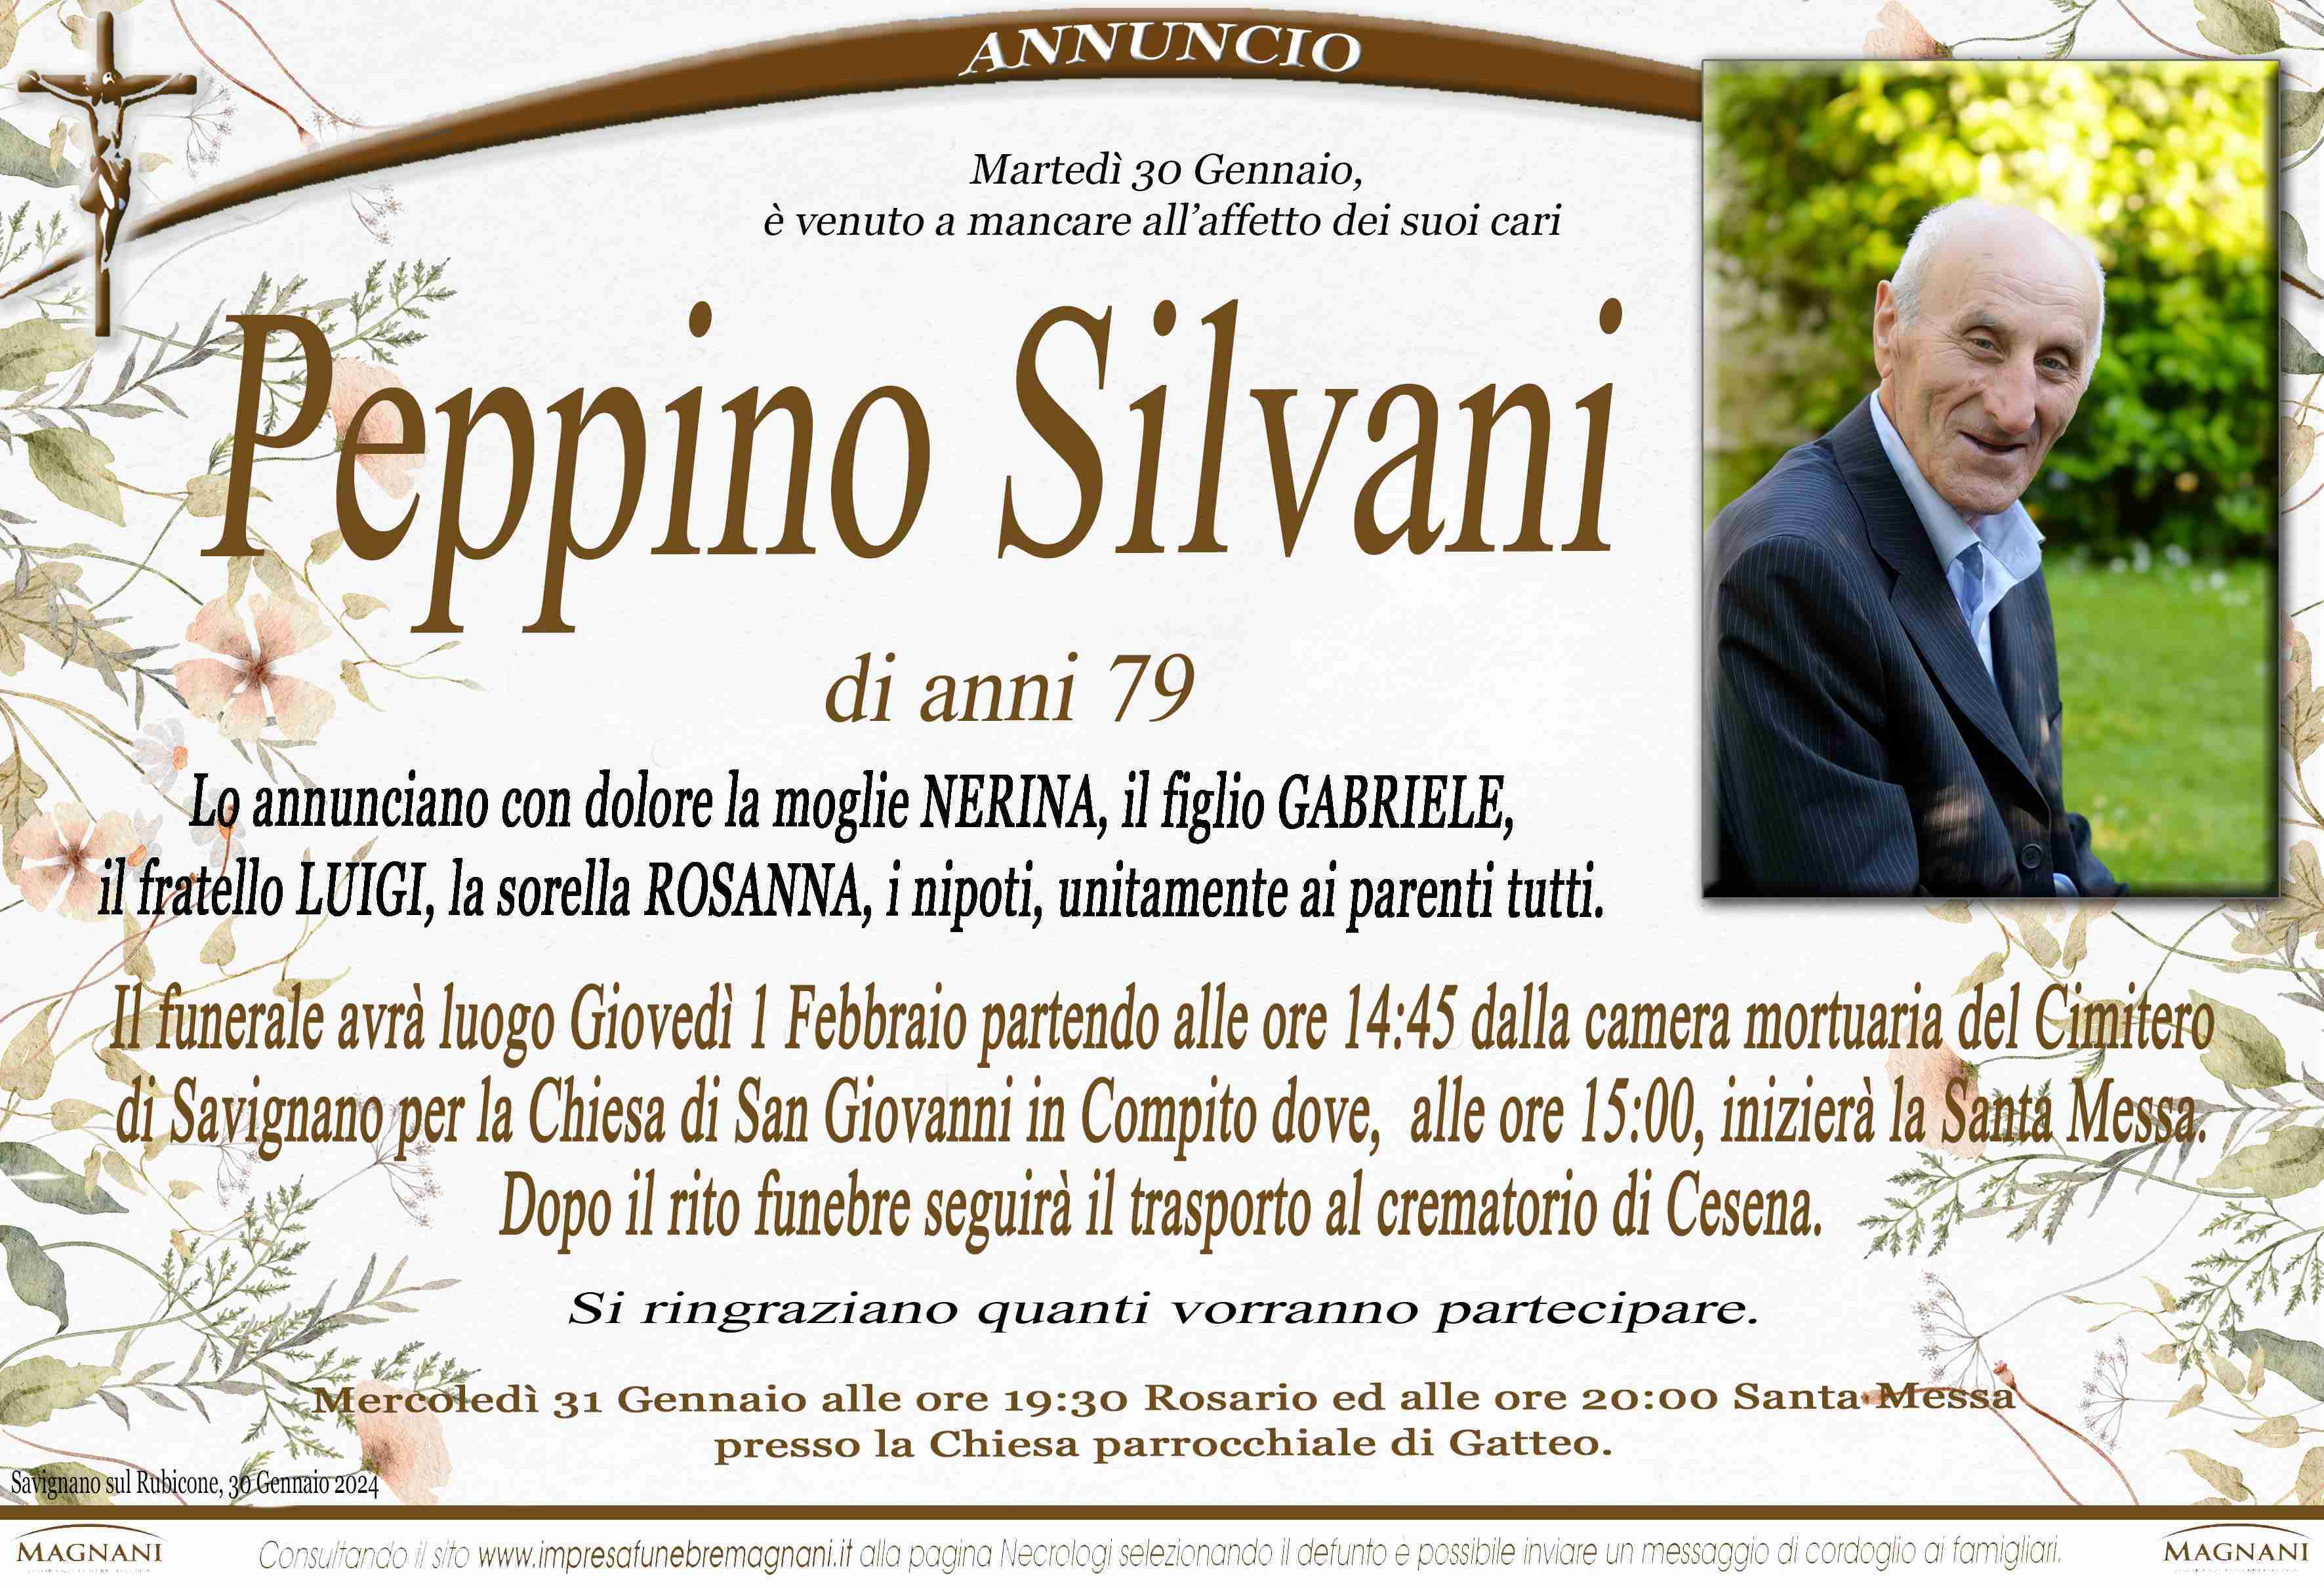 Peppino Silvani